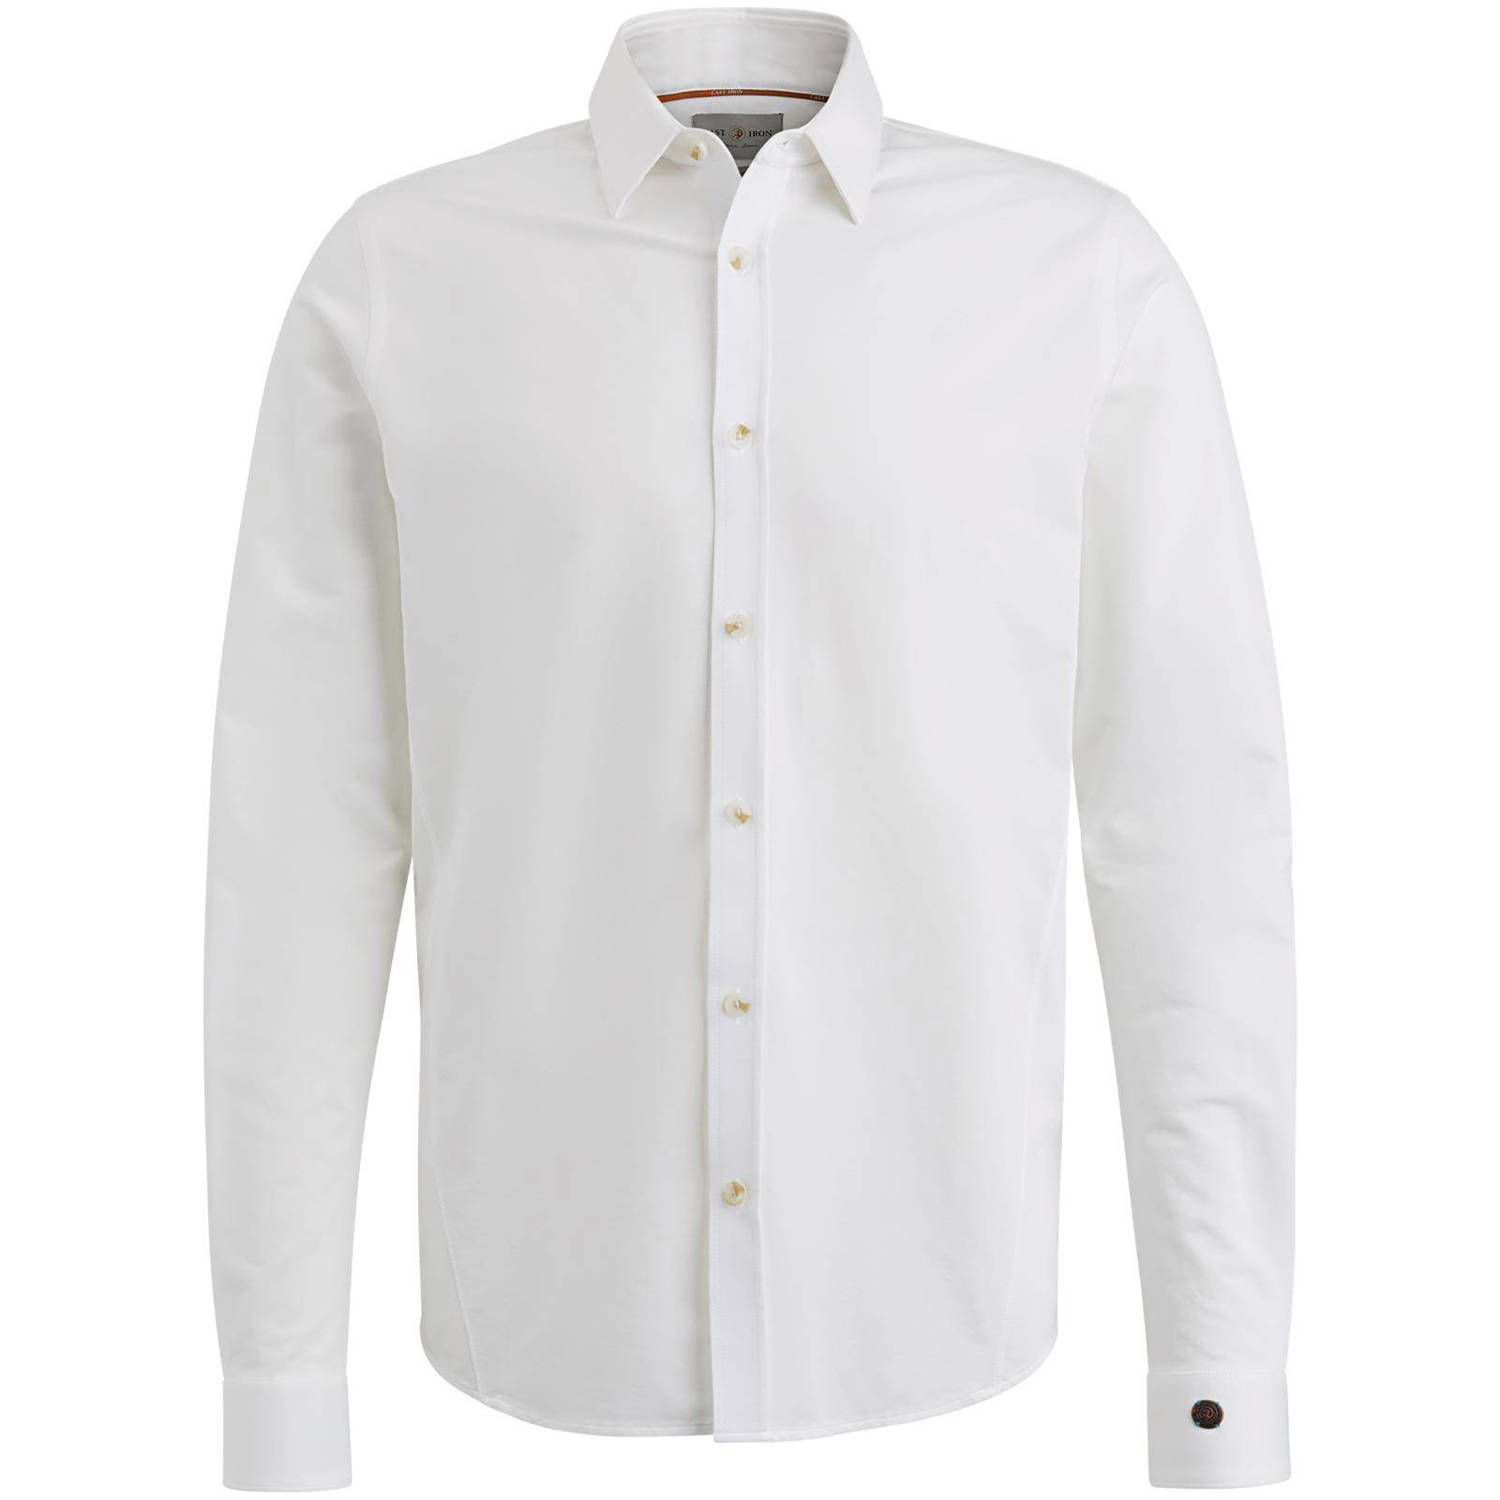 CAST IRON Heren Overhemden Long Sleeve Shirt Twill Jersey 2 Tone Lichtgrijs